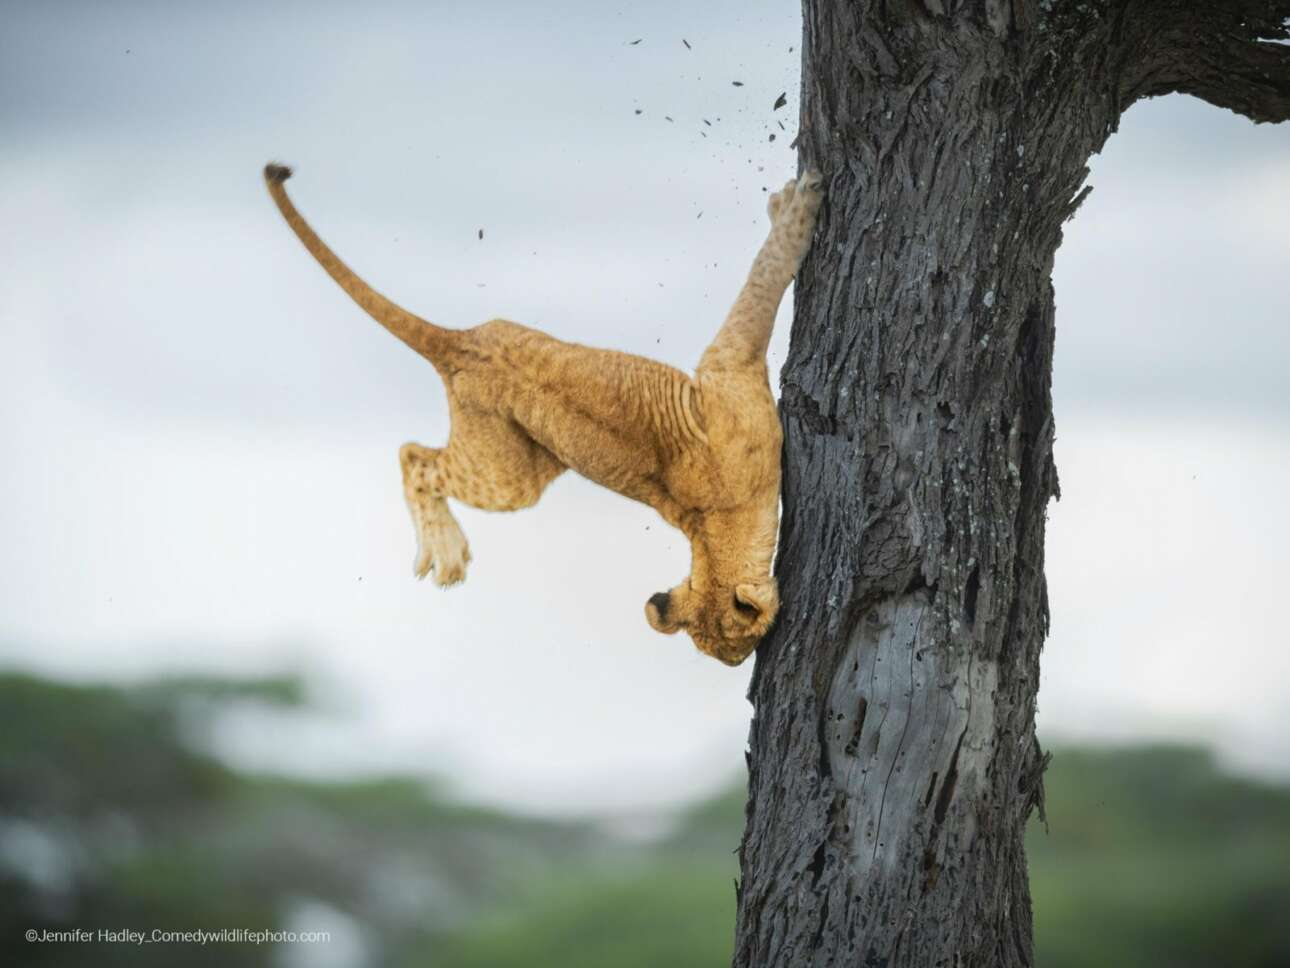 Η φωτογραφία με το τριών μηνών αδέξιο λιονταράκι που προσπαθεί να κατεβεί από ένα δέντρο, στην Τανζανία, για να βρει την οικογένειά του, αναδείχθηκε νικητής του διαγωνισμού, ενώ πήρε την πρώτη θέση και στην κατηγορία Πλάσματα της Γης